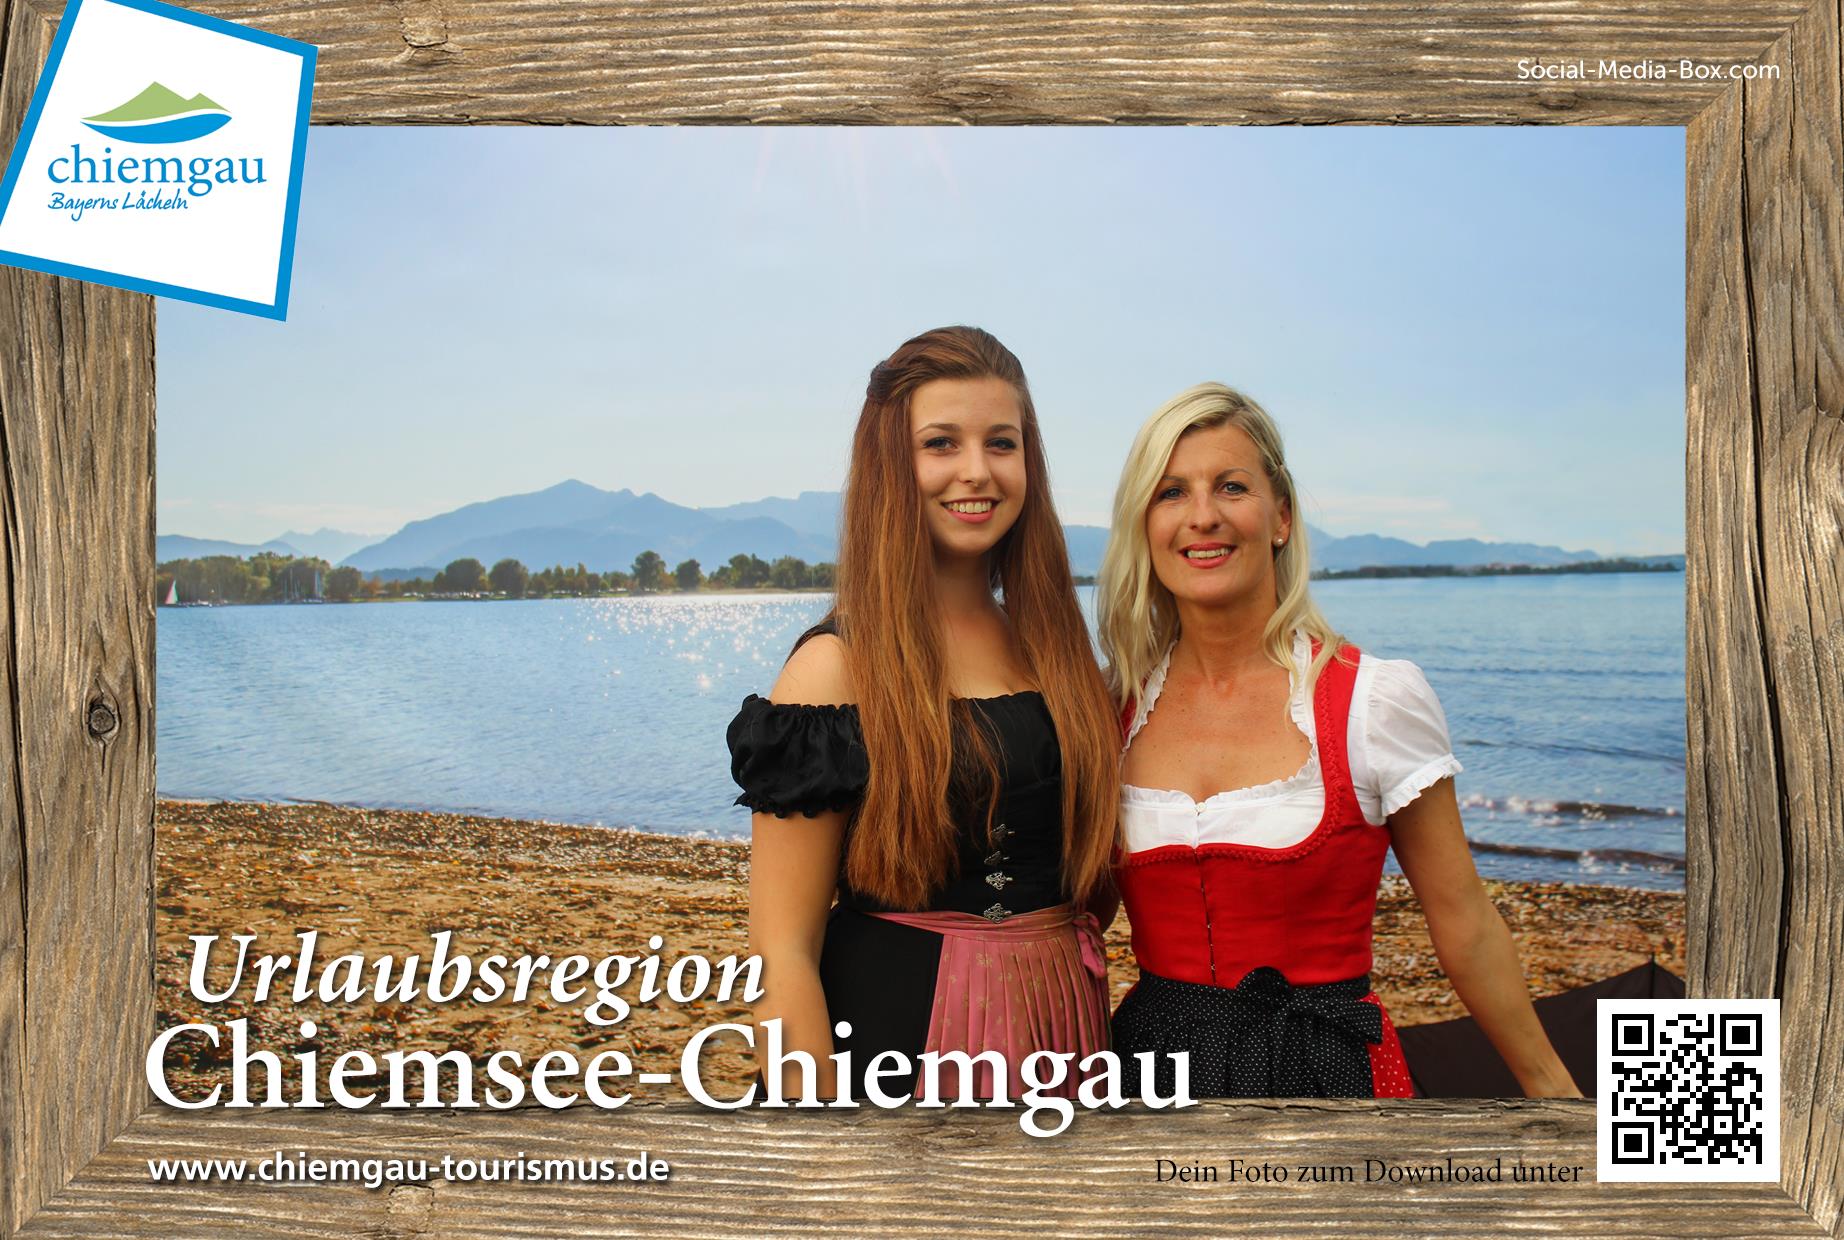 Chiemgau Tourismus – Strandbad Alpenradtour